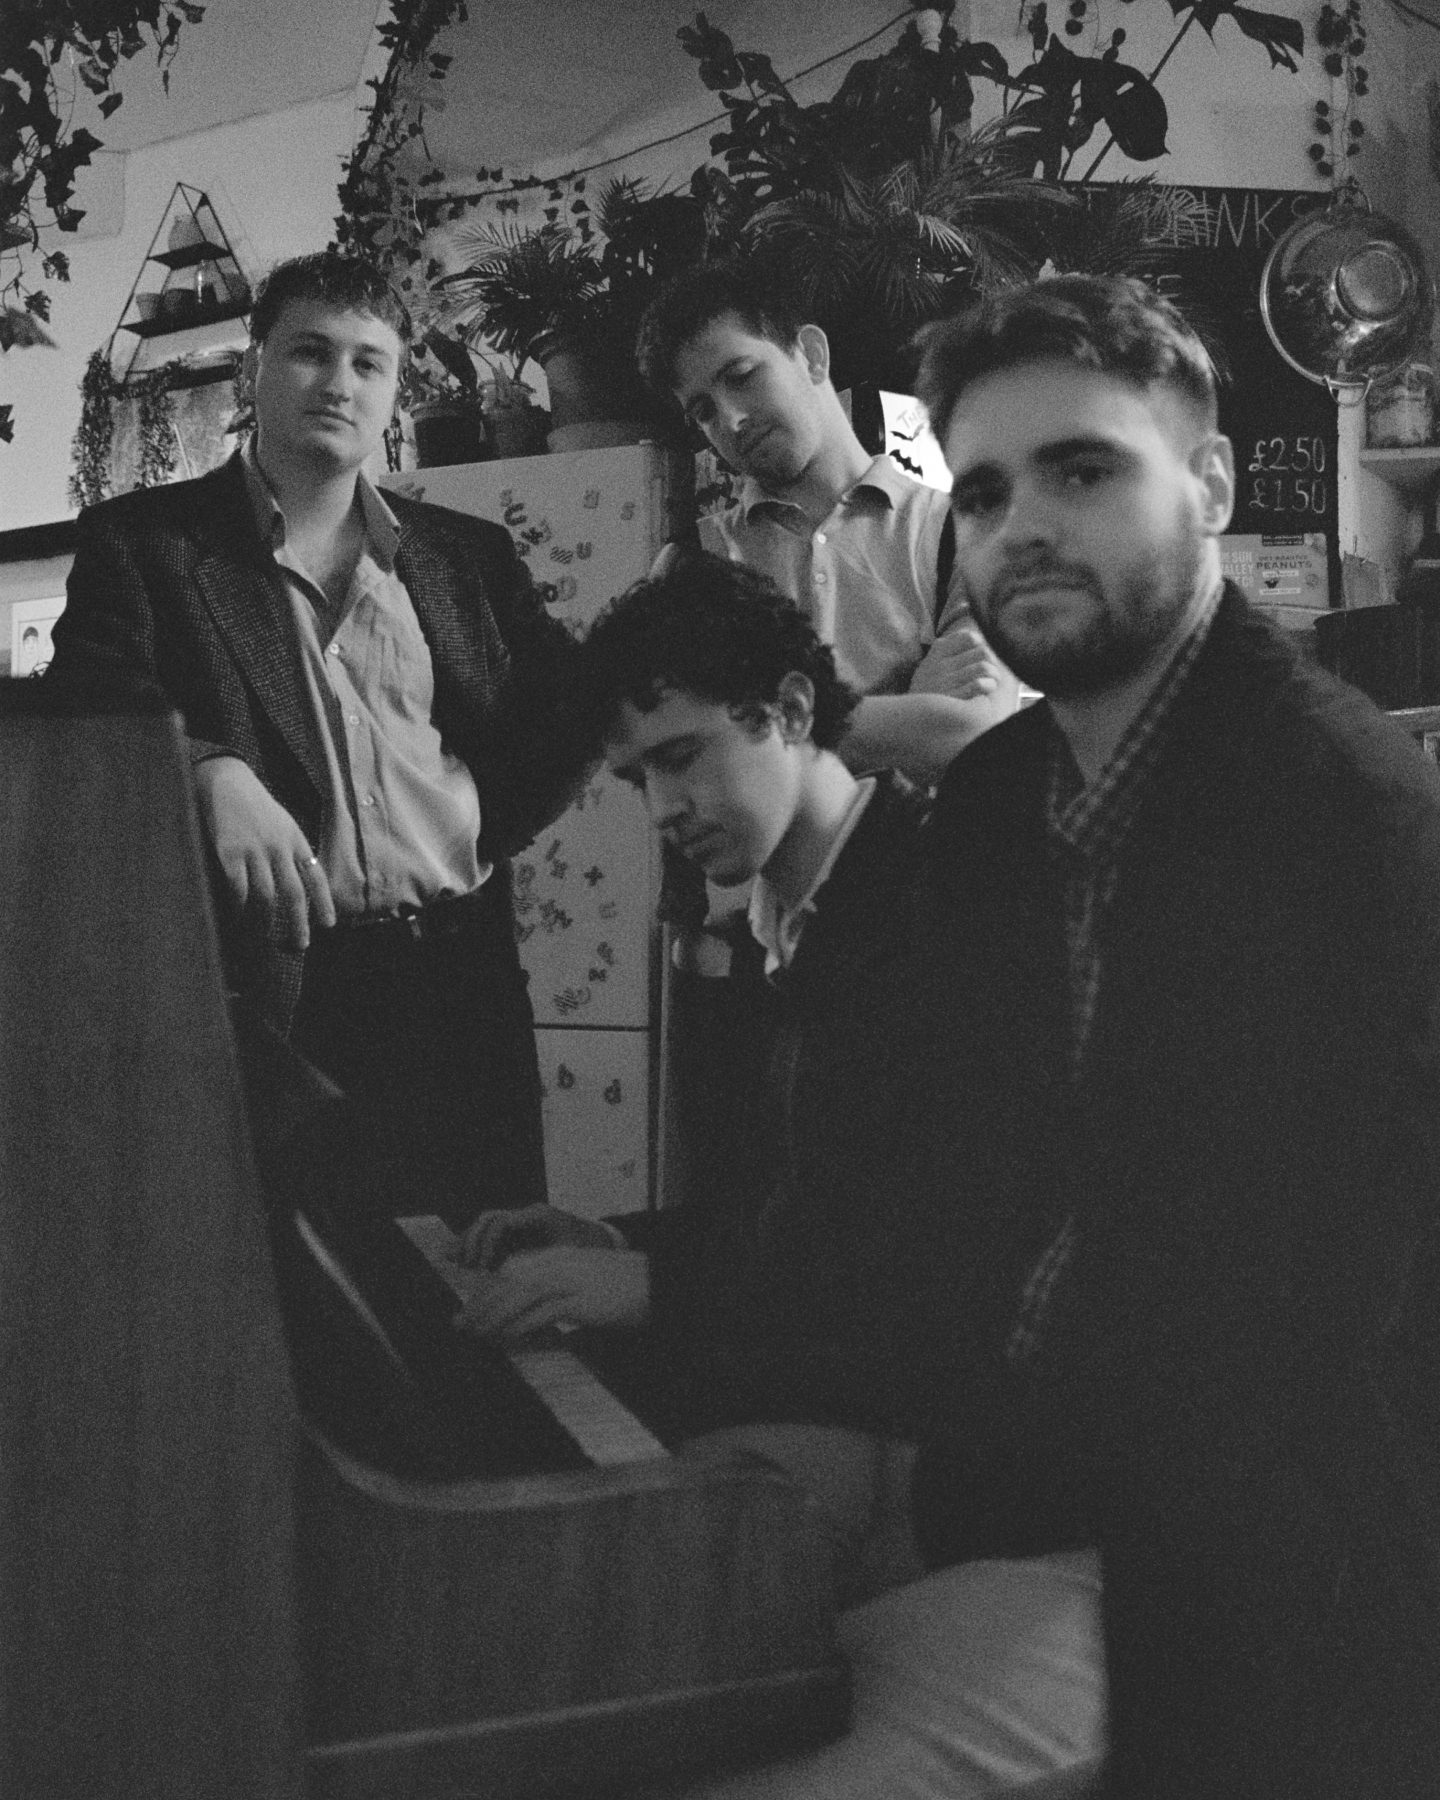 La banda 'Cucamaras' en una foto en blanco y negro.